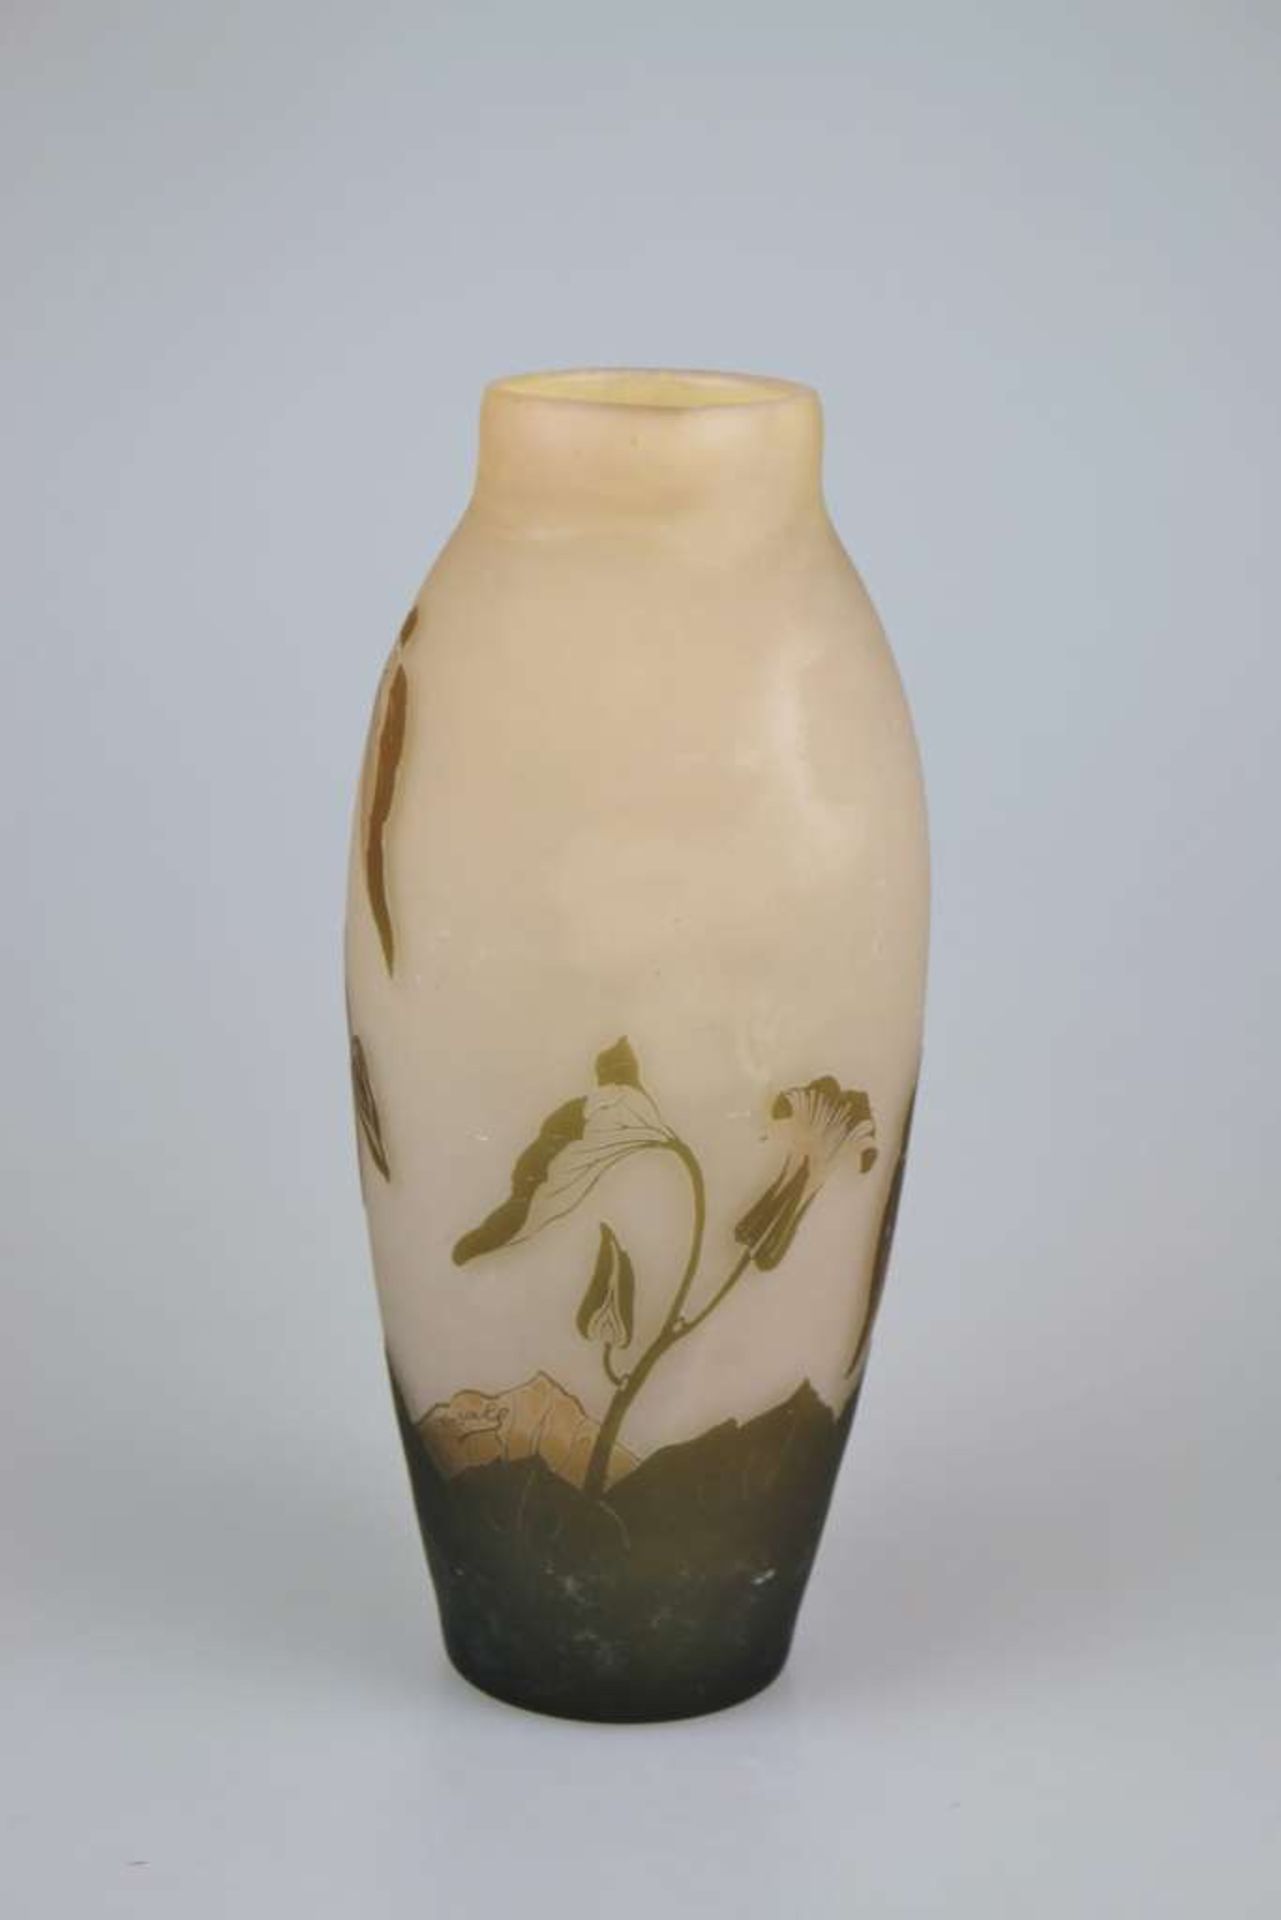 Arsall-Vase mit Trichterwinde, Vereinigte Lausitzer Glaswerke AG, Weisswasser / Oberlausitz, 19 - Image 2 of 3